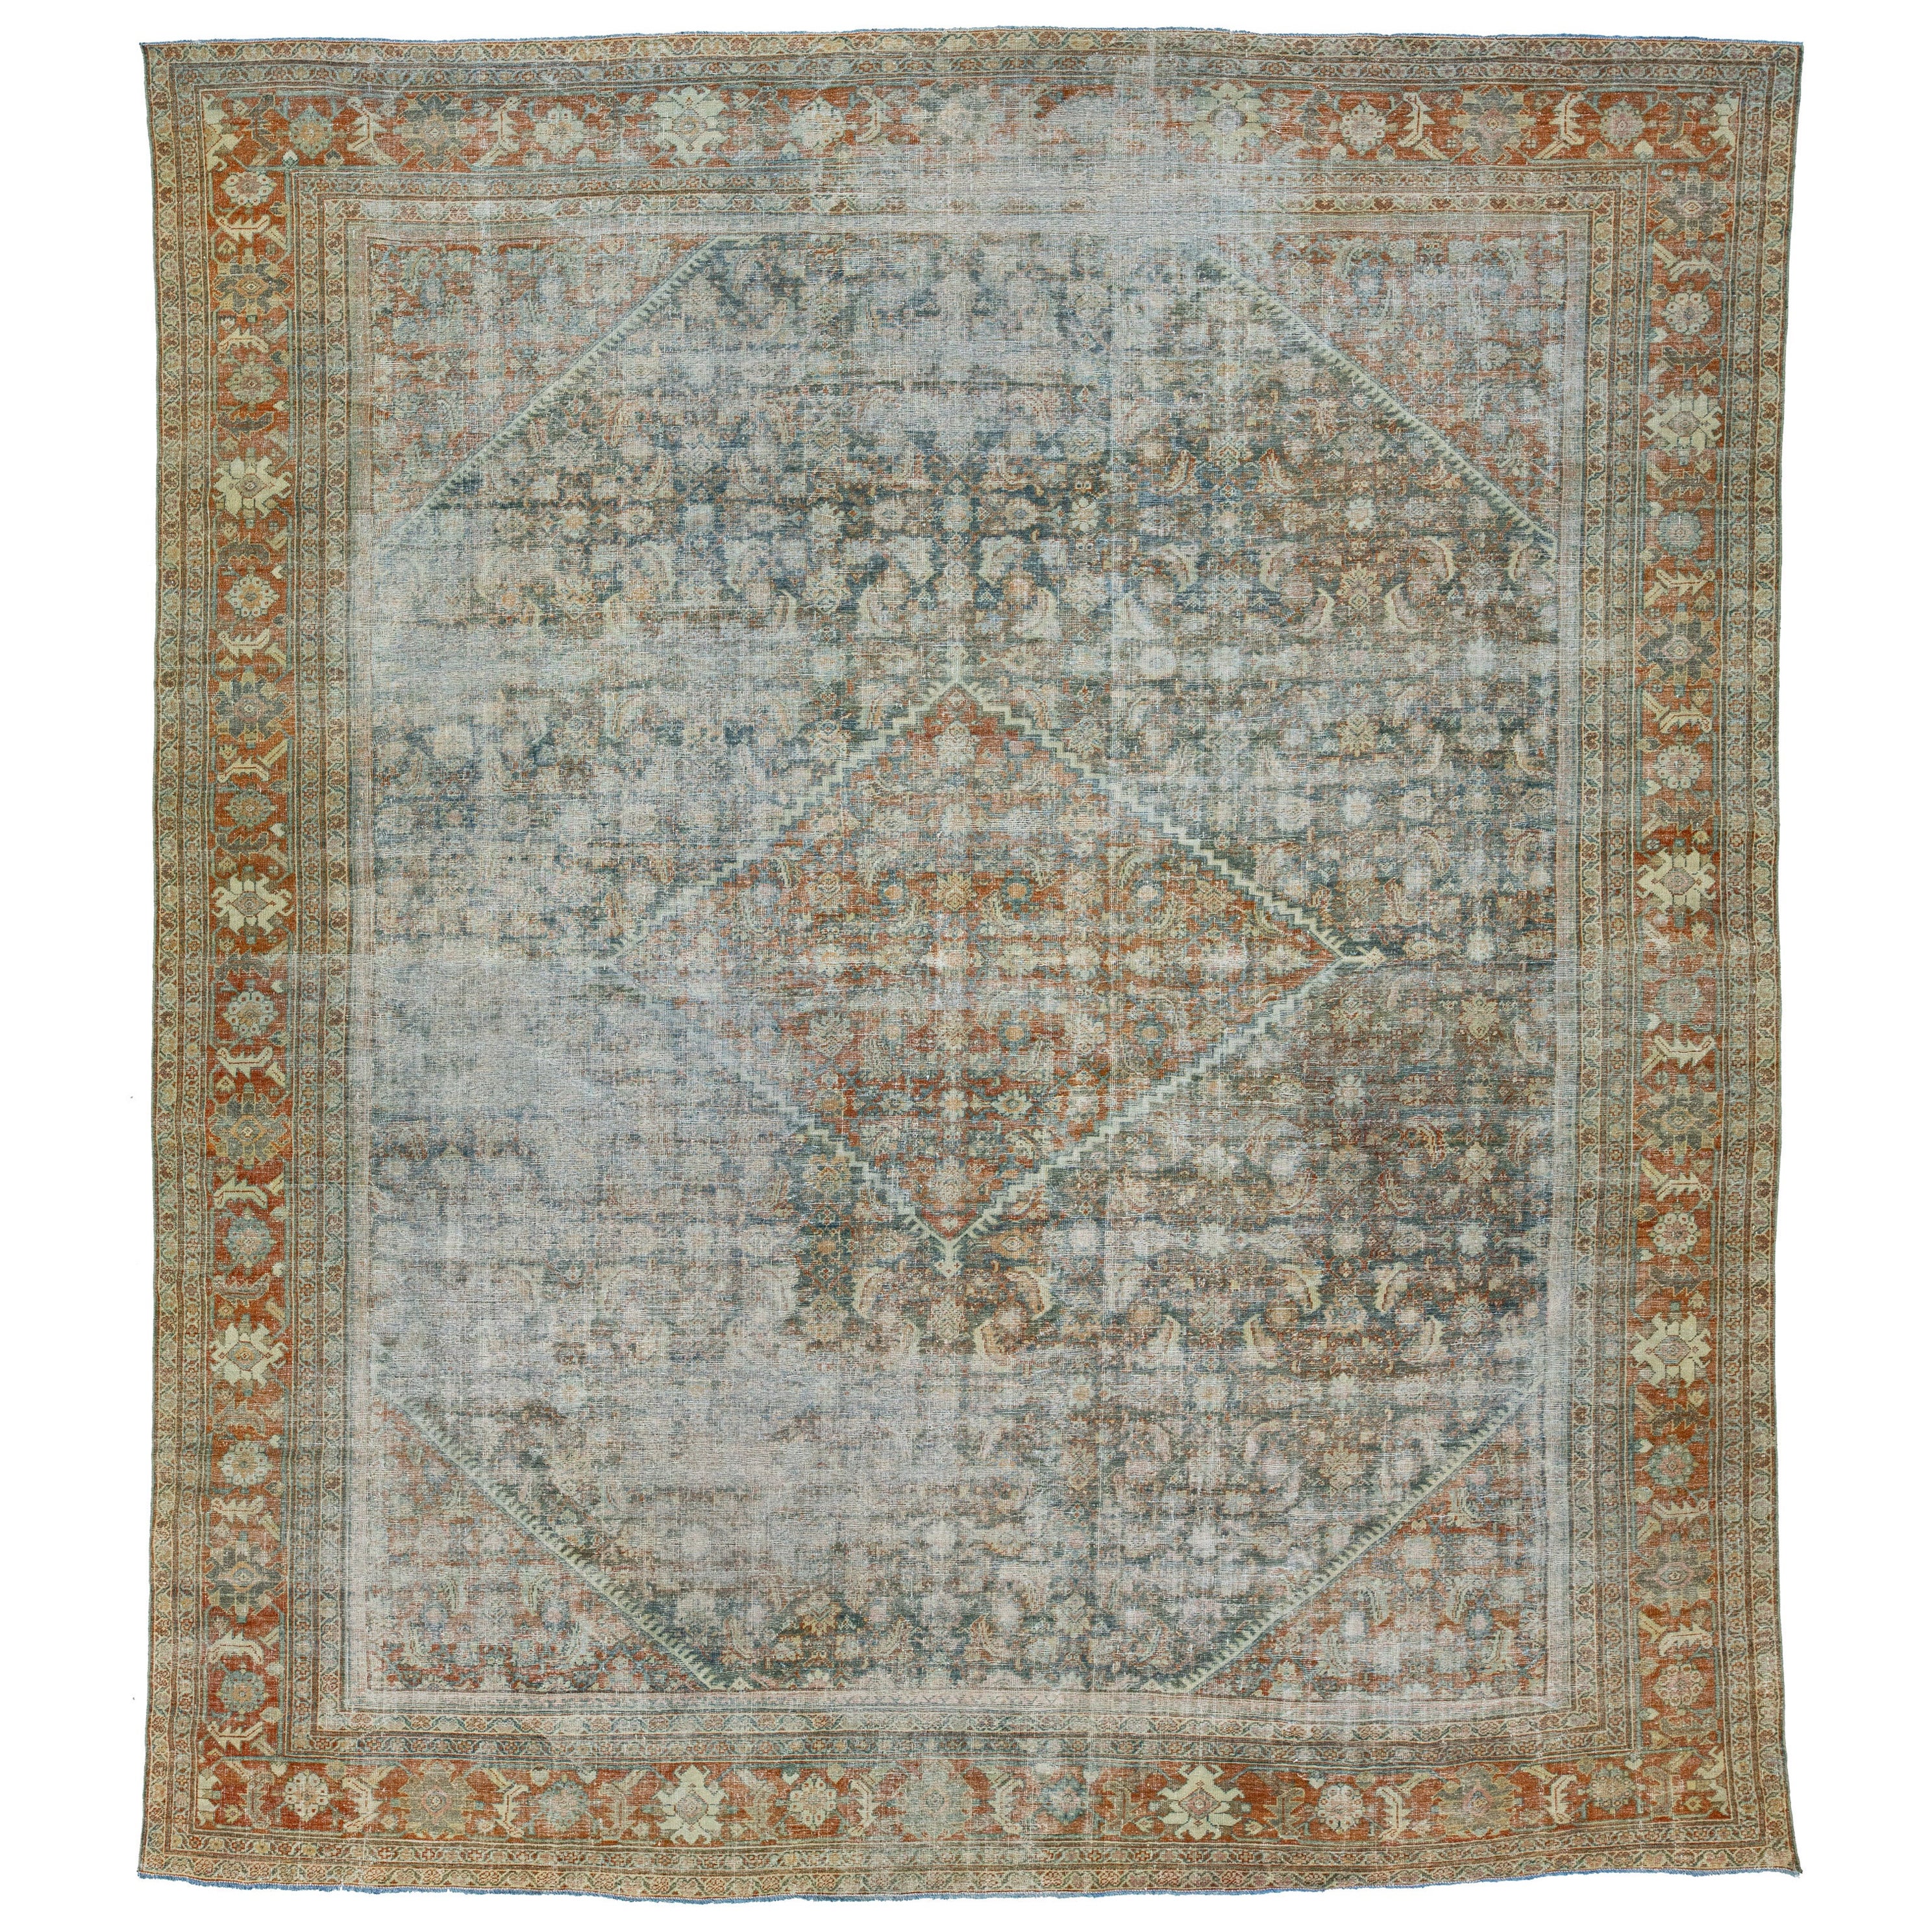 Tapis persan Mahal ancien en laine des années 1910, fabriqué à la main en couleur rouille